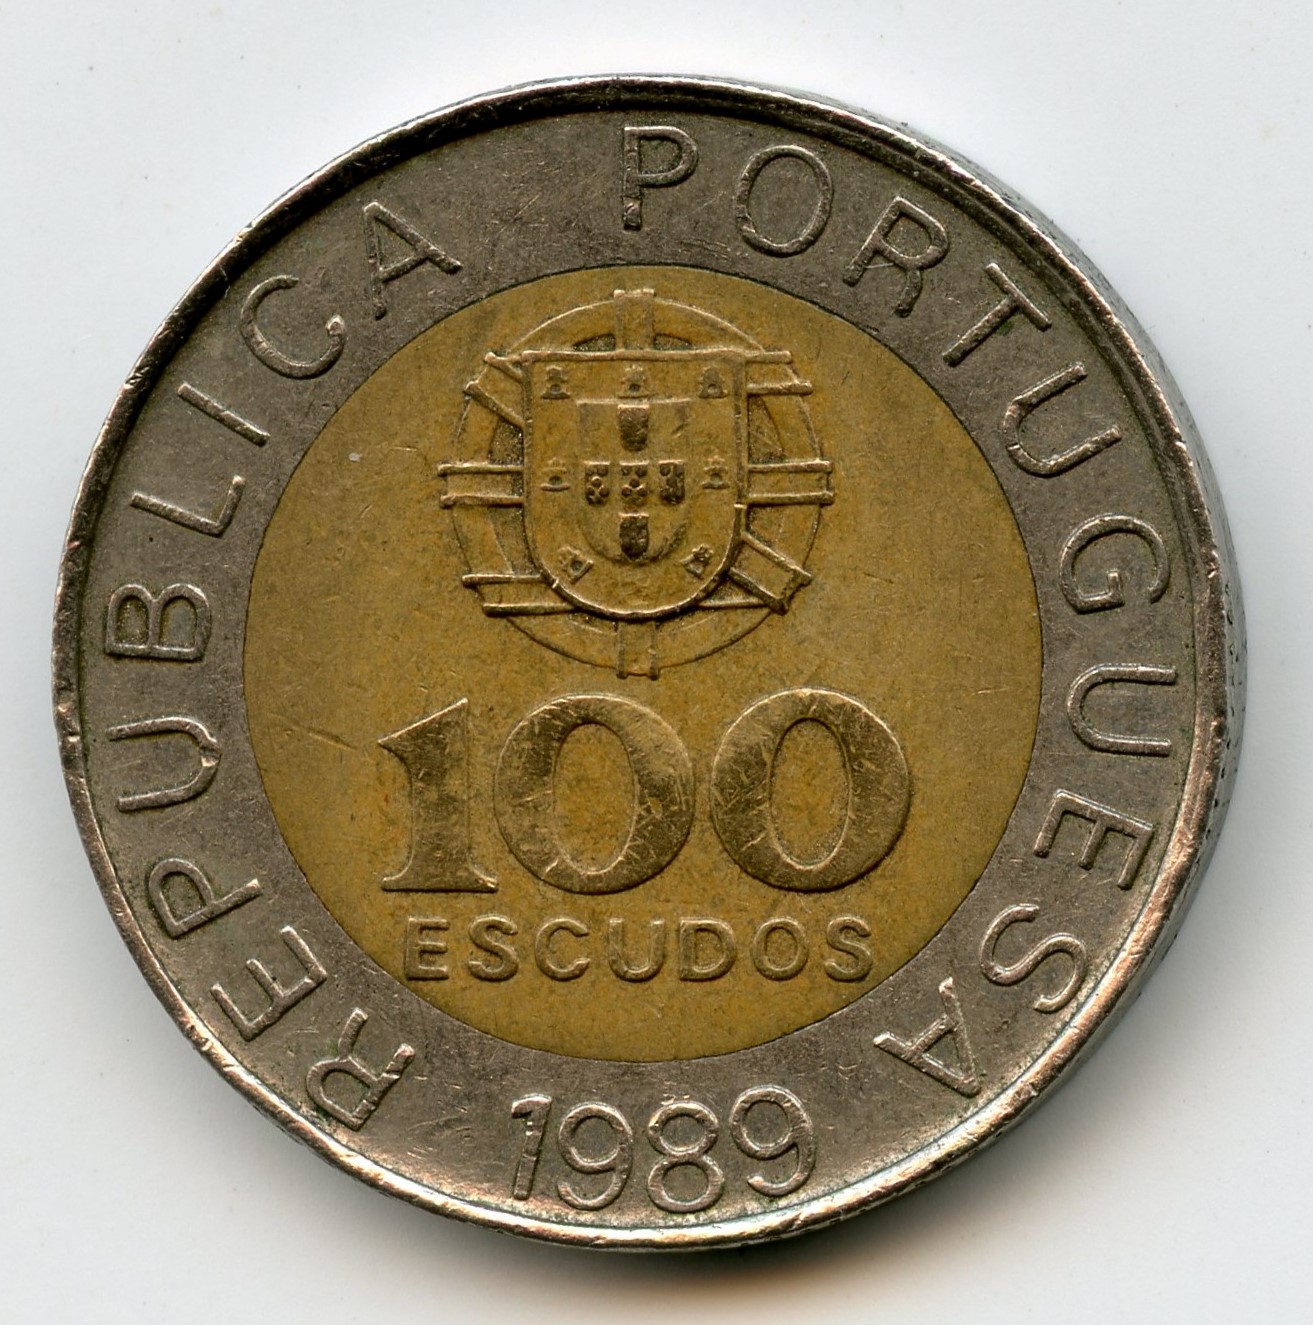 Portugal 100 escudo 1989002.jpg